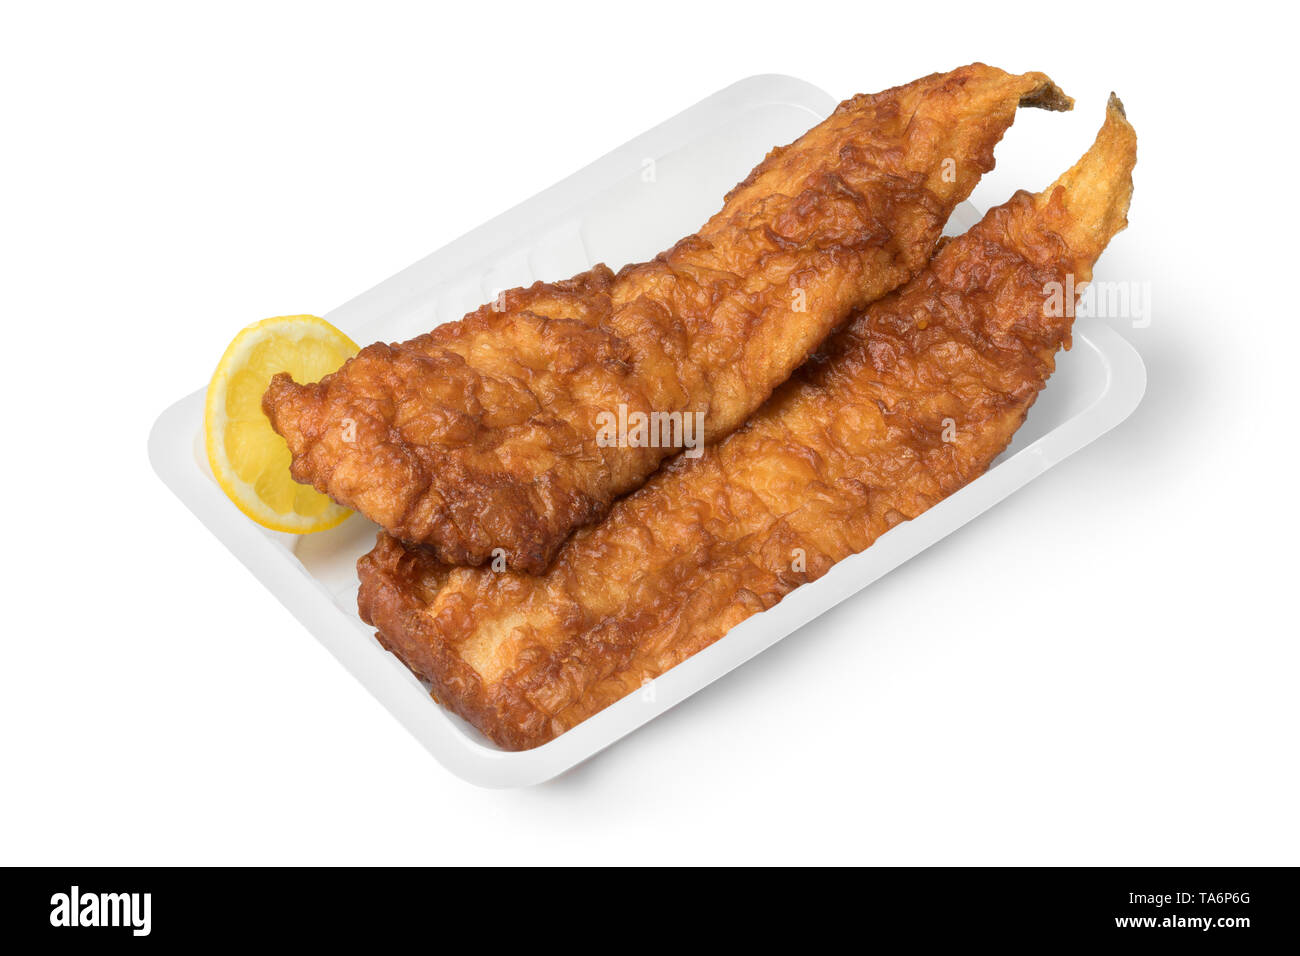 Frittierter Fisch Filet, genannt lekcurbek in Niederländisch, serviert in einer Plastikschüssel auf weißem Hintergrund Stockfoto